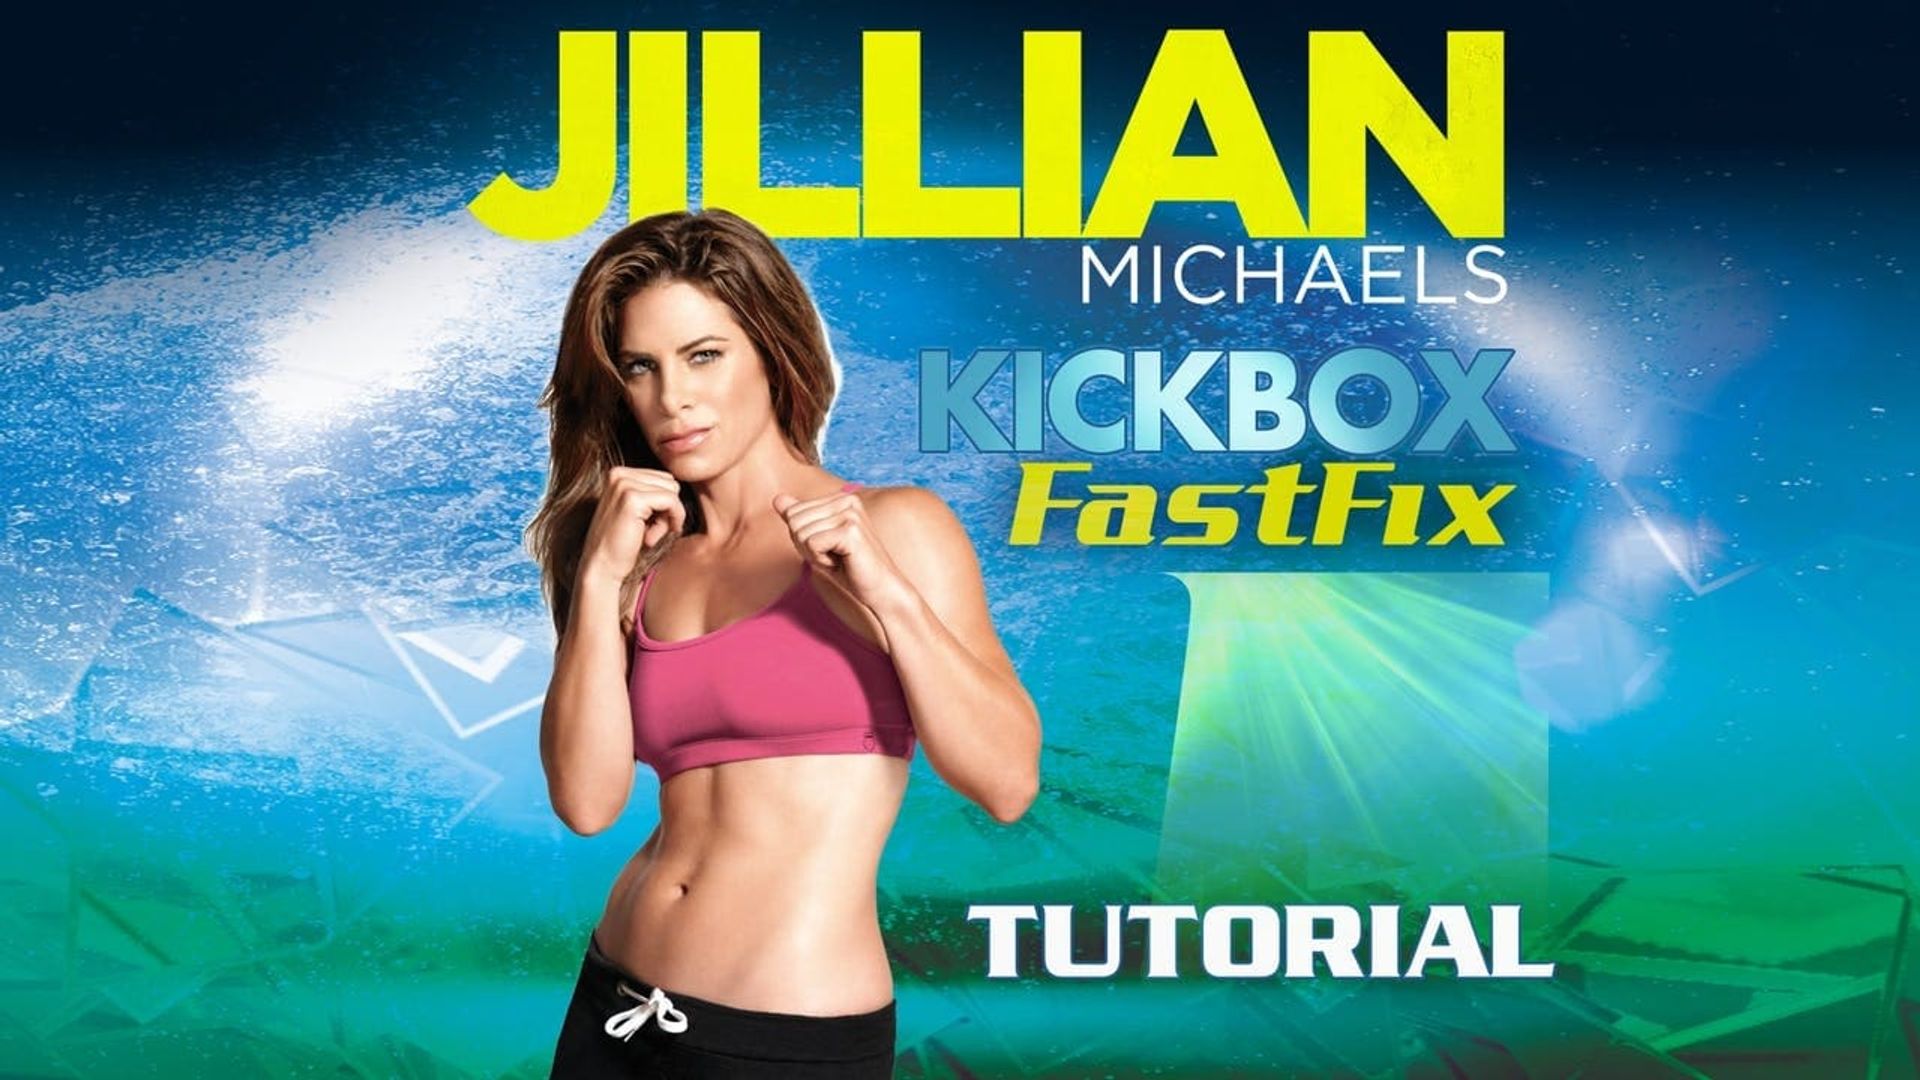 Jillian Michaels: Kickbox Fastfix background